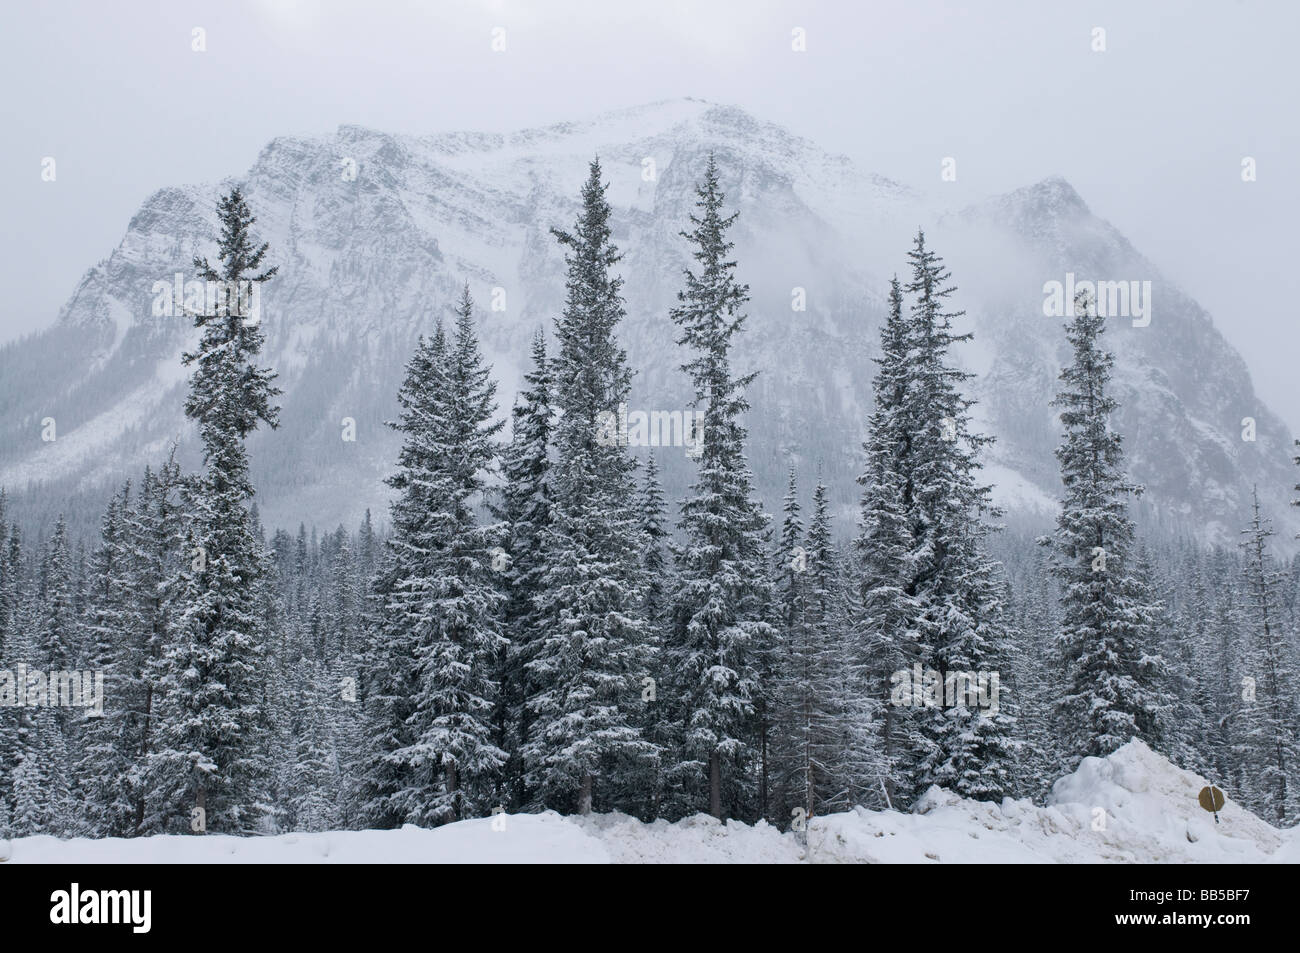 Sapins dans un paysage de neige dans le parc national Banff au Canada Banque D'Images